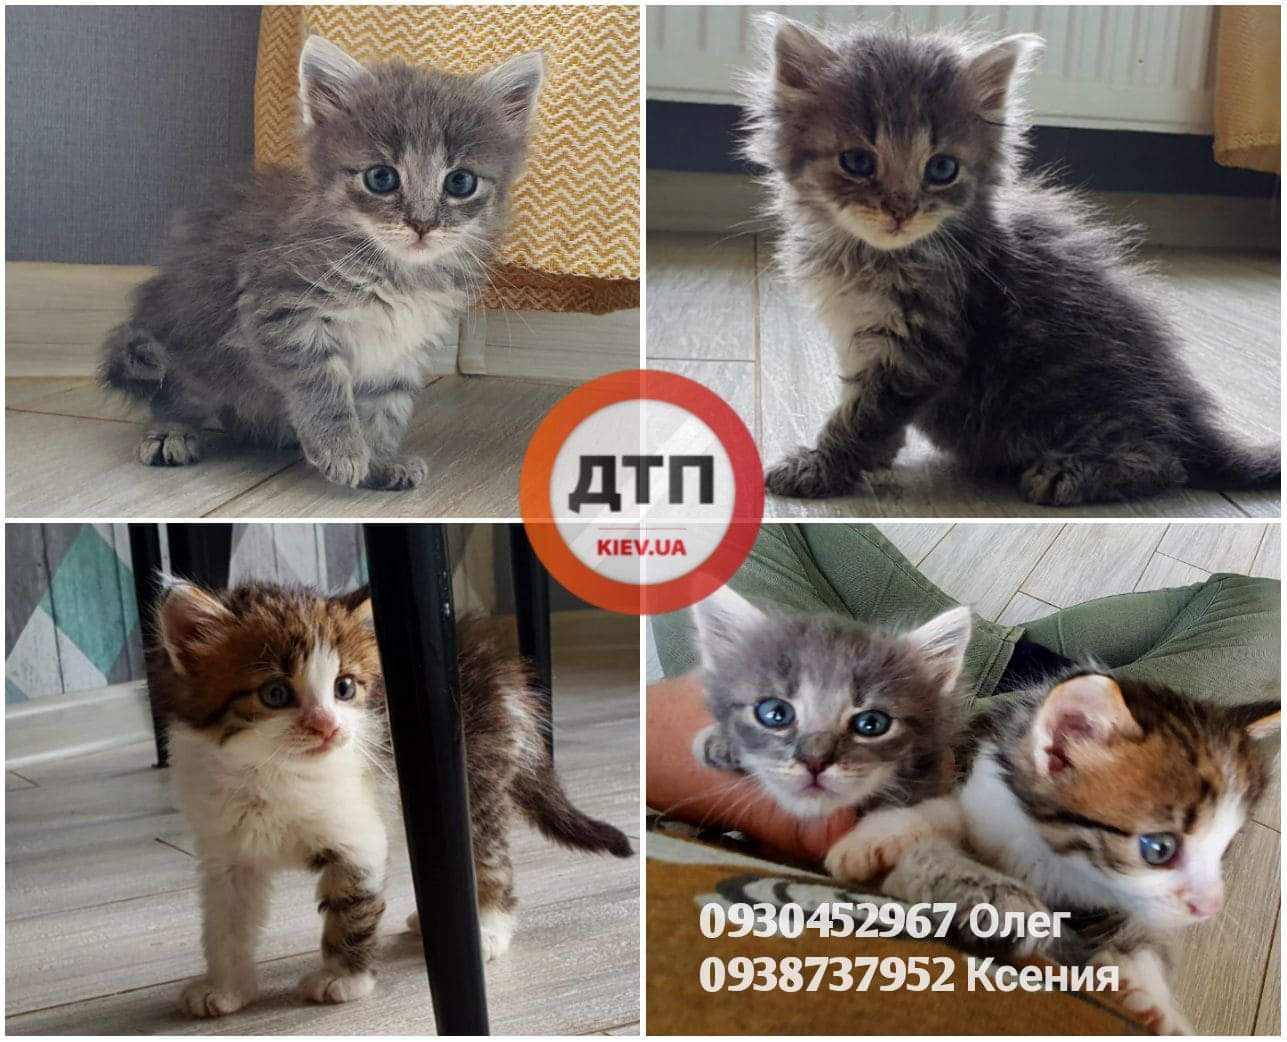 В Киеве кормящую кошку сбил автомобиль: ищем добрых и ответственных хозяев для маленьких, но уже самостоятельных котят